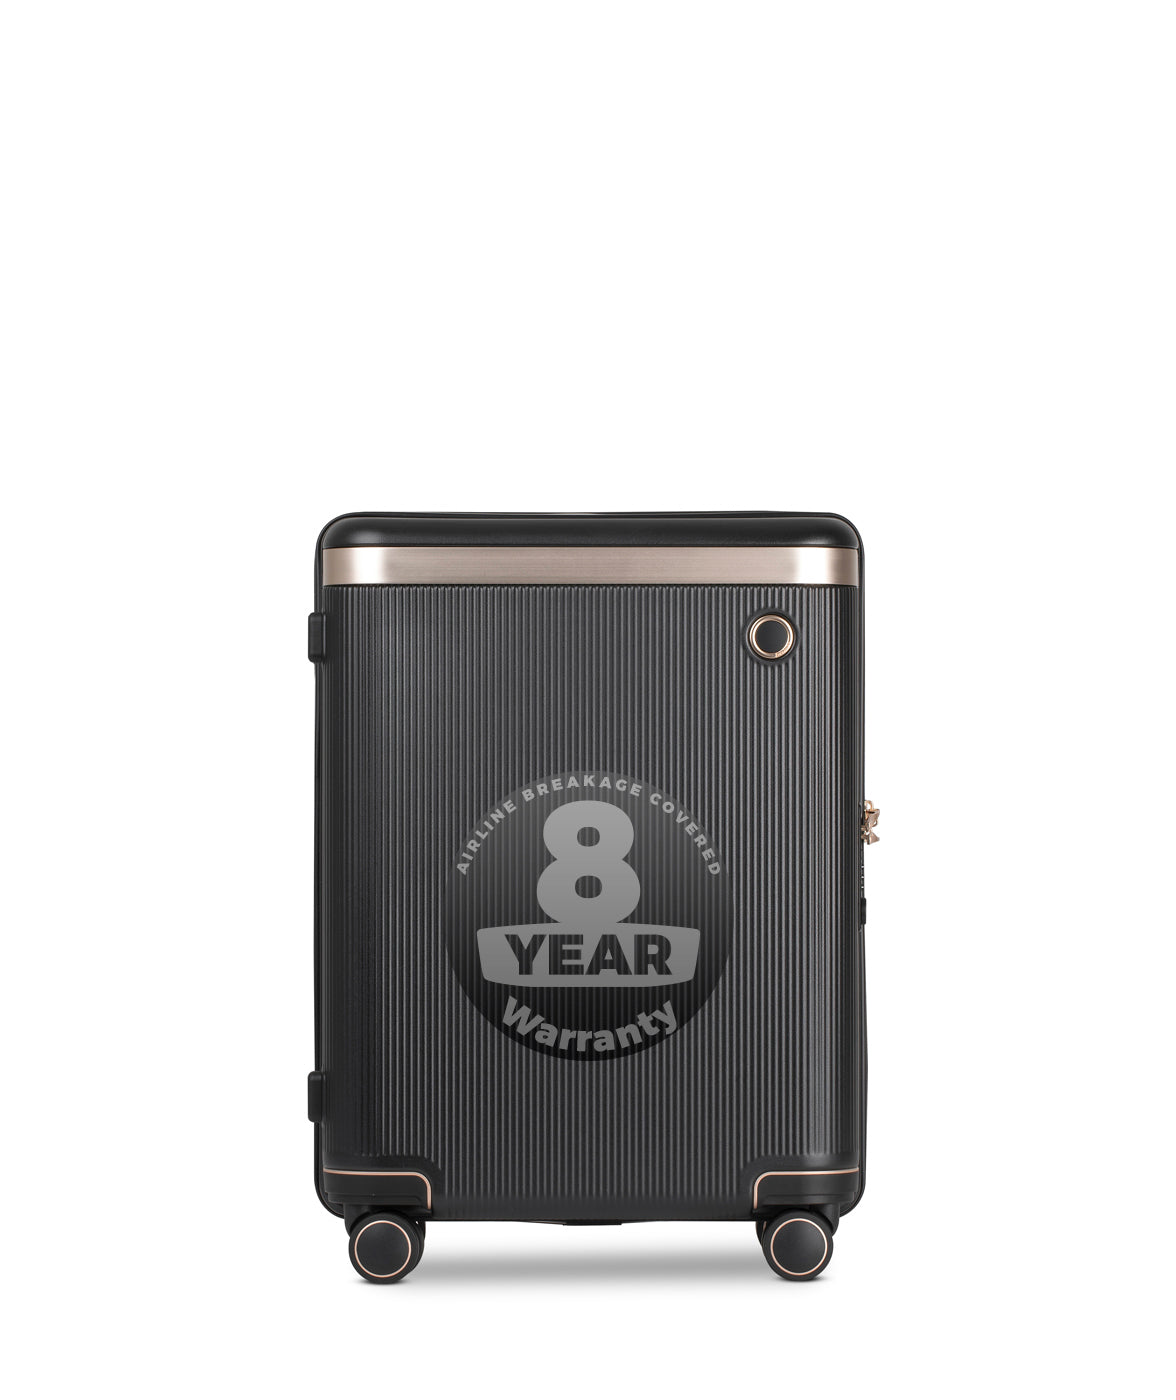 Echolac Dynasty Suitcase, Small 55 cm, Dunkelgrau